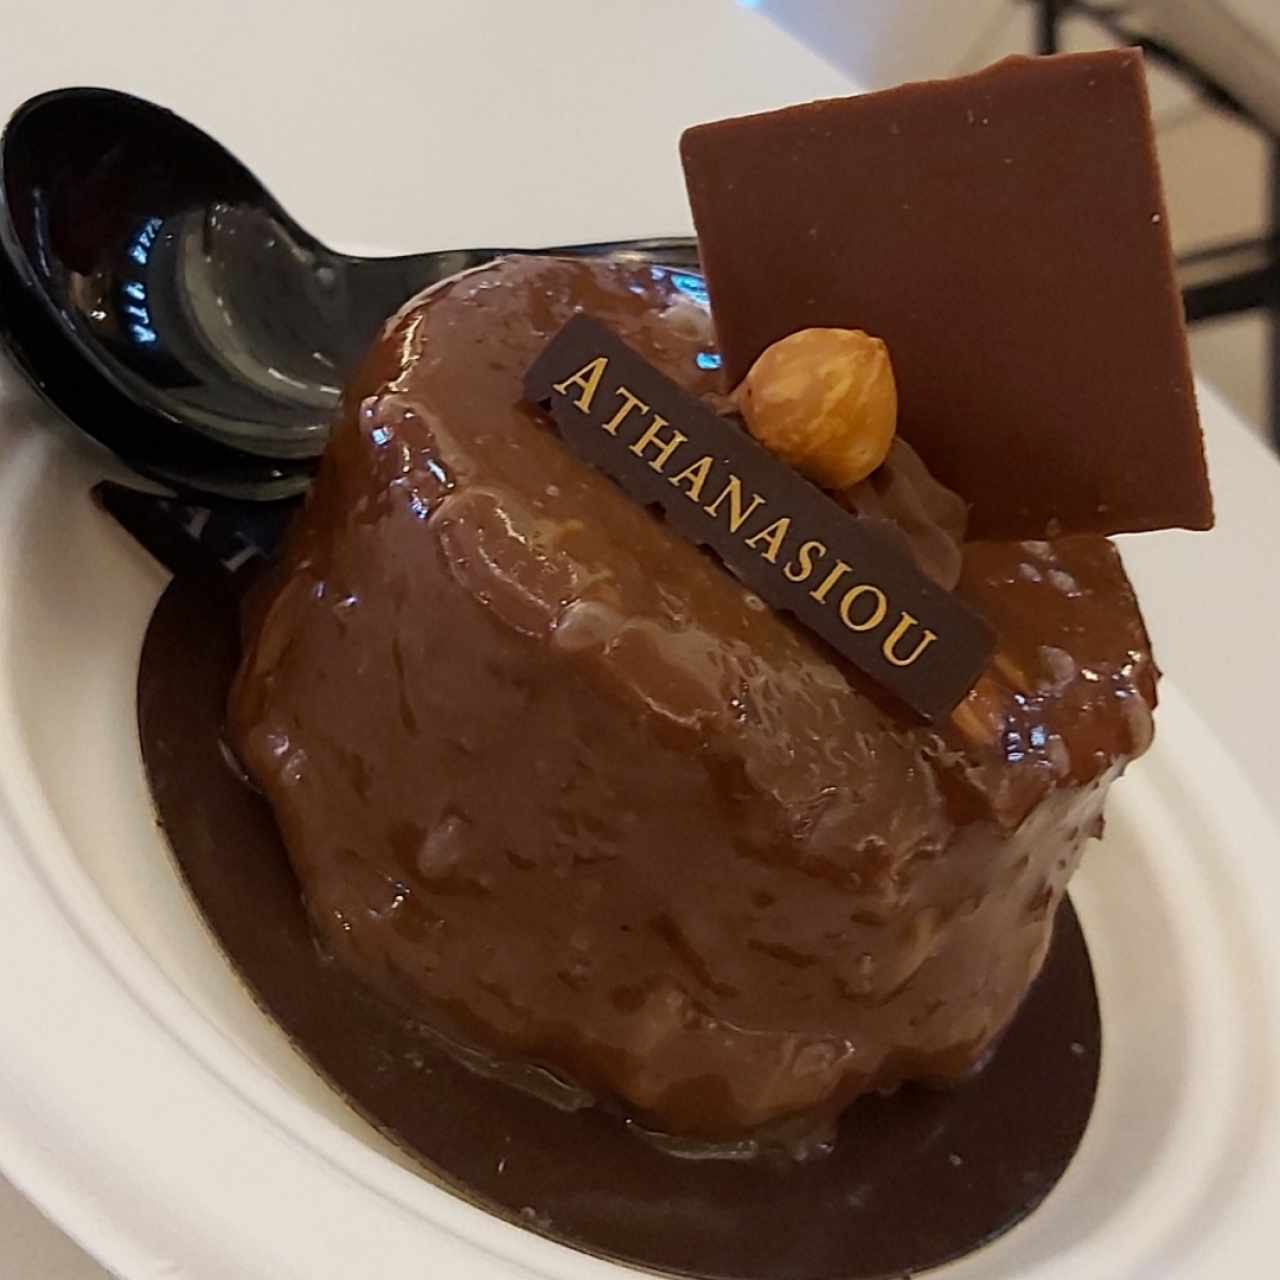 Mousse de chocolate (no es el nombre pero describe la mayor parte de su interior)